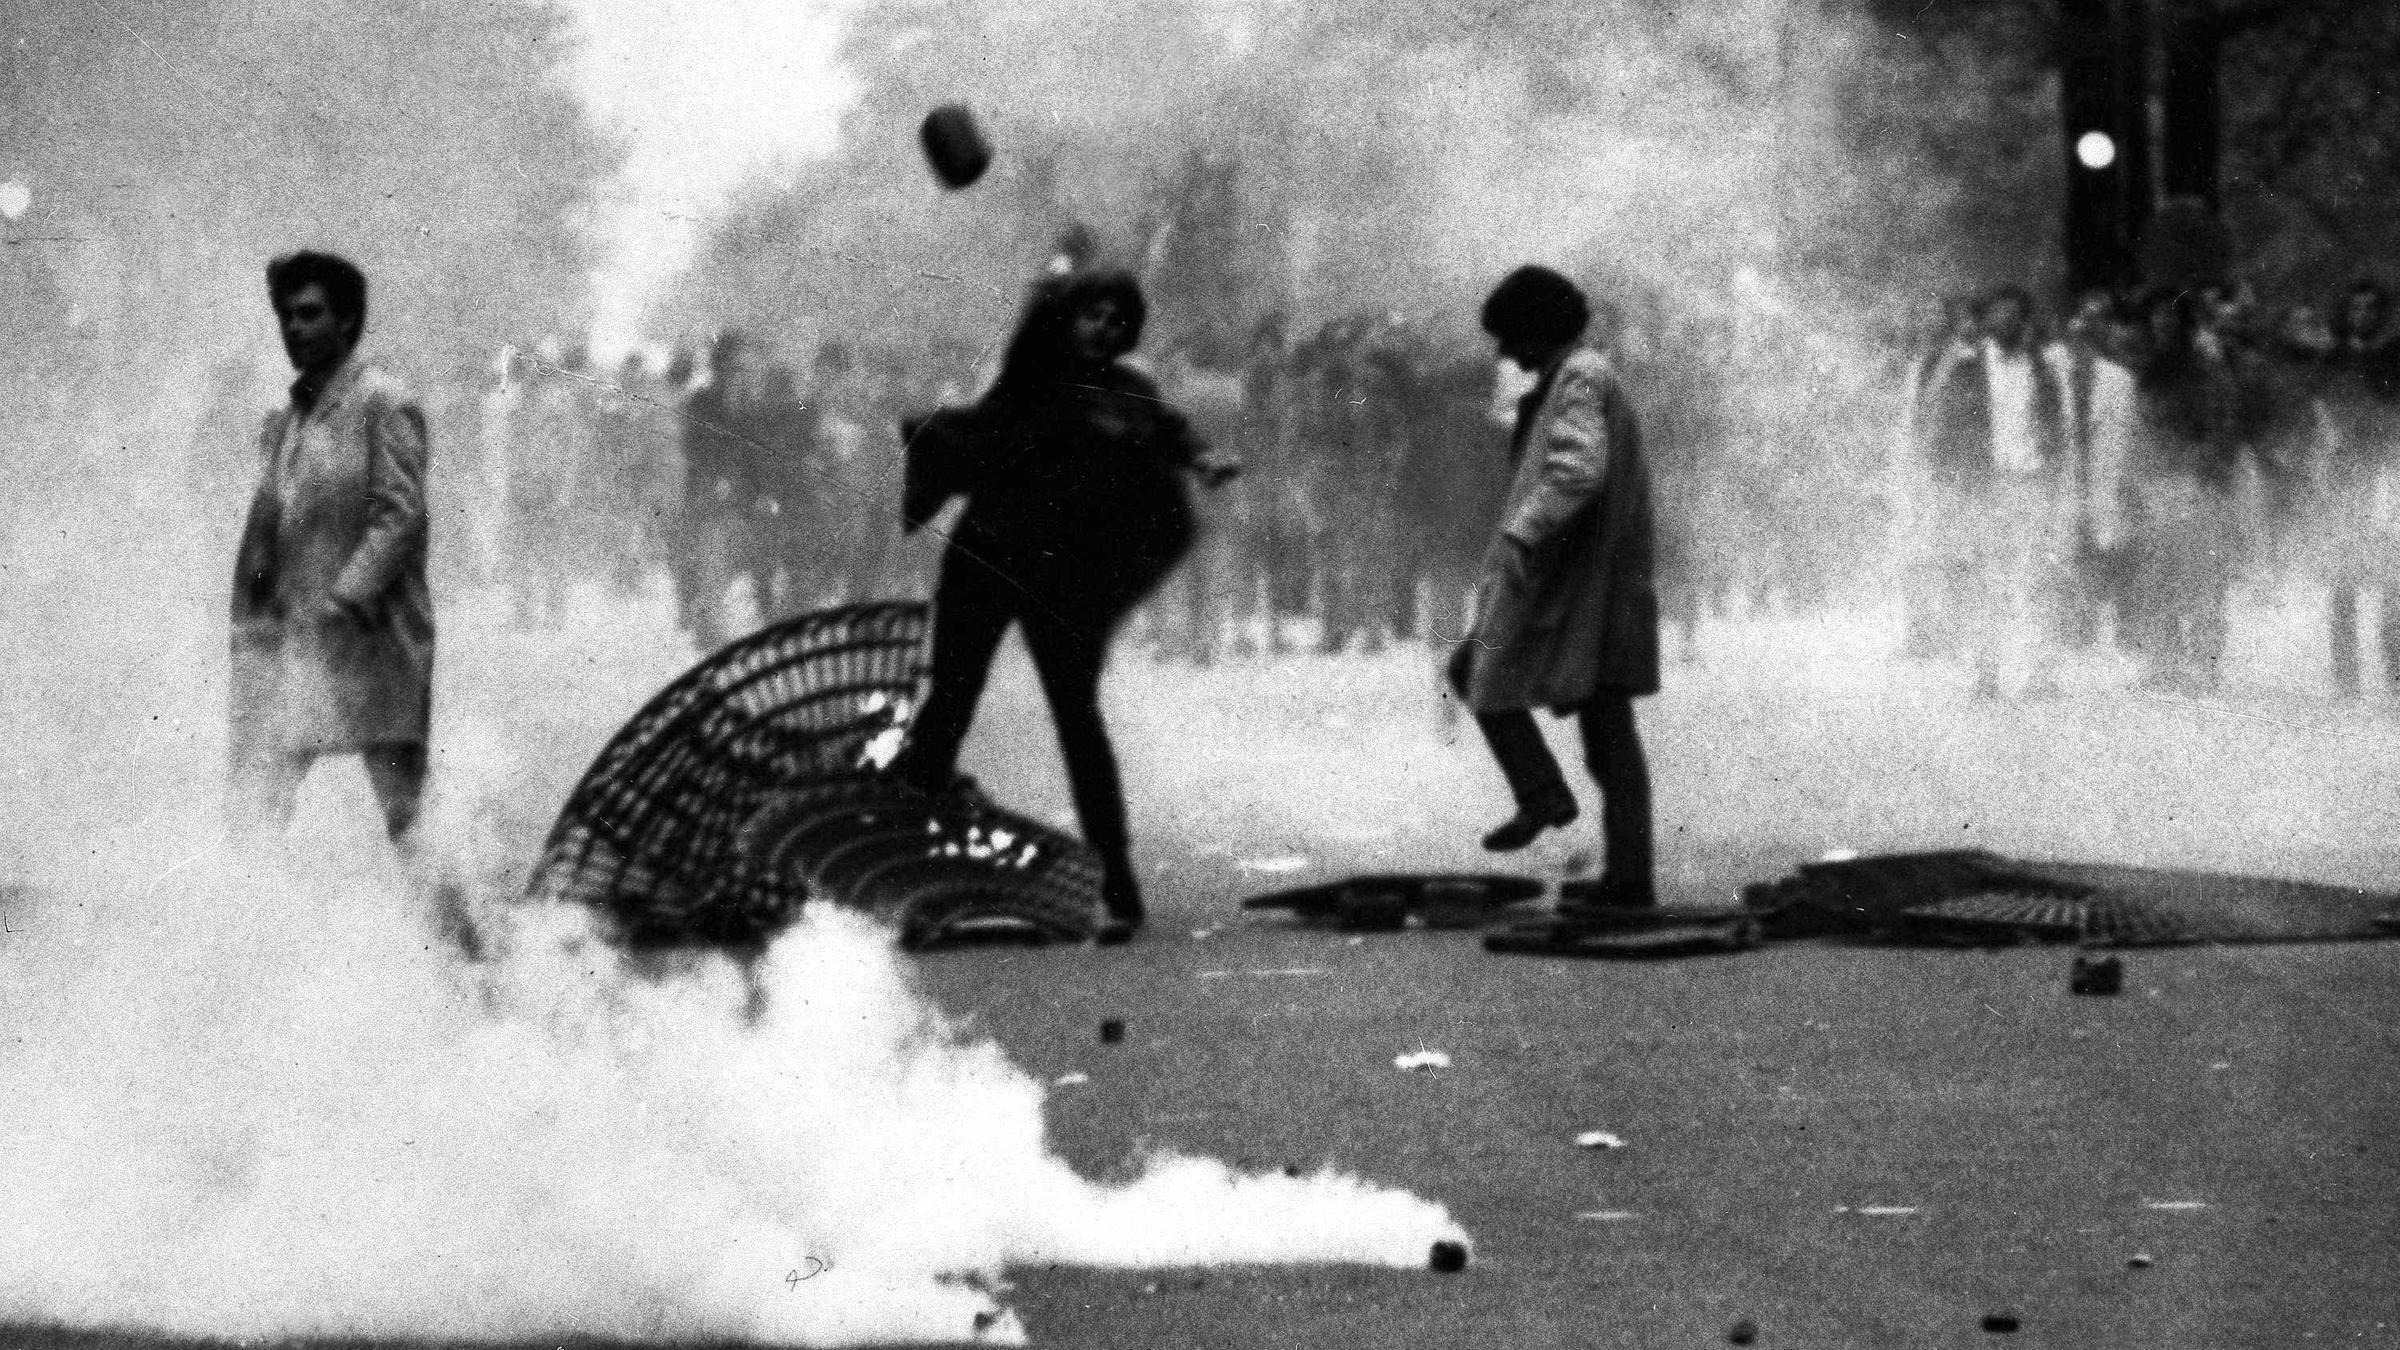 3. Mai: Studenten besetzen die Pariser Universität Sorbonne. Die Polizei räumt mit Gewalt. Es folgen Demos und Straßenschlachten. Die Gewerkschaften rufen für den 13. Mai zum Generalstreik auf, Arbeiter besetzen Betriebe.